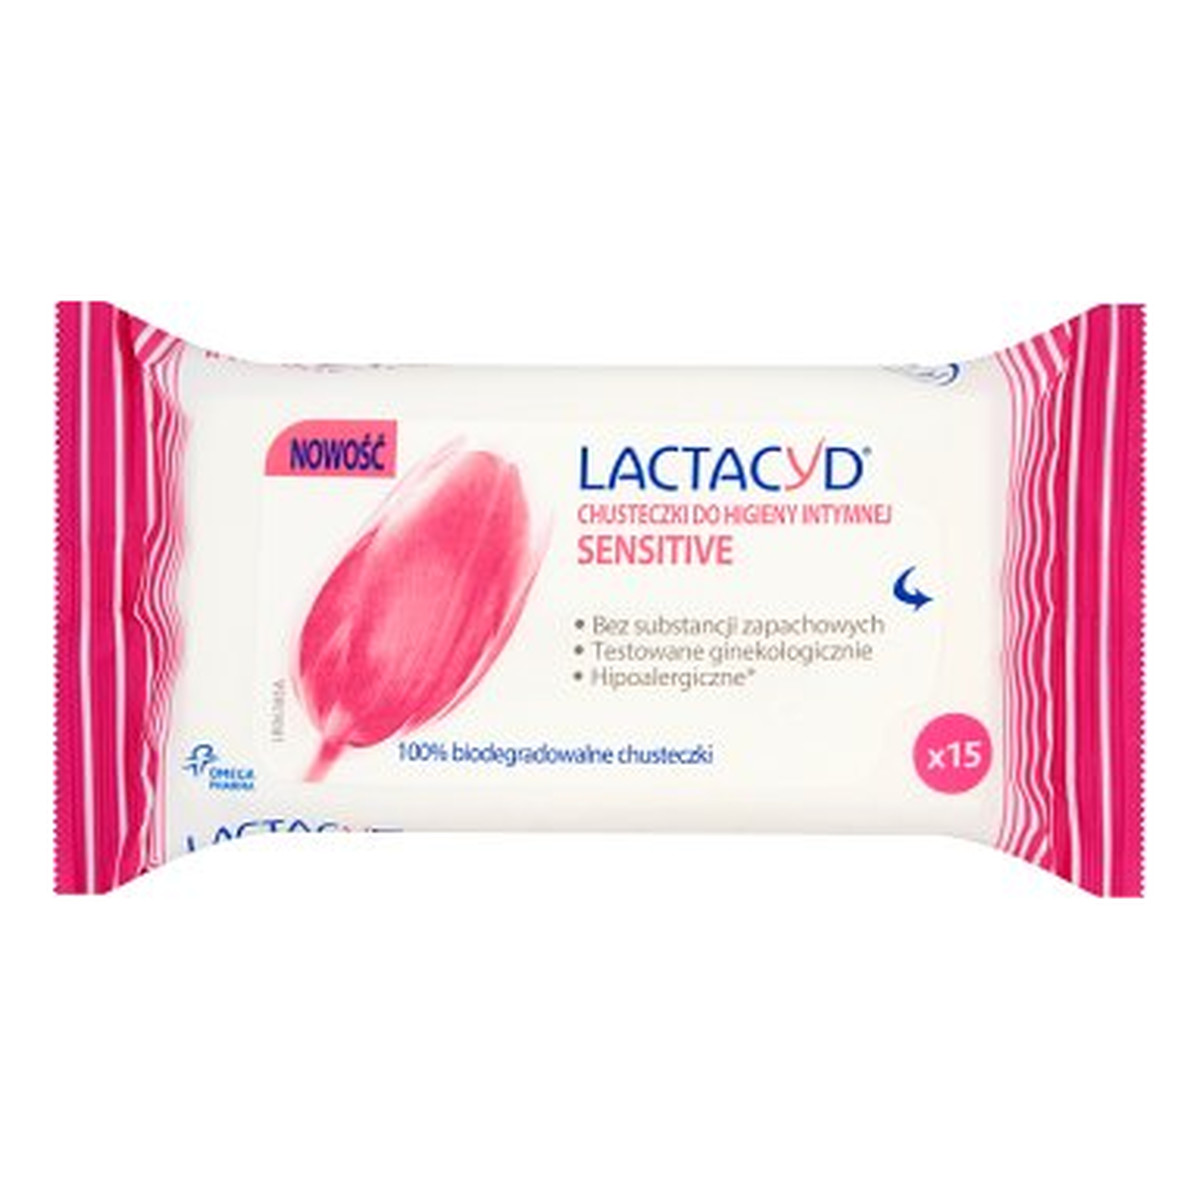 Lactacyd Sensitive Chusteczki Do Higieny Intymnej 15szt.